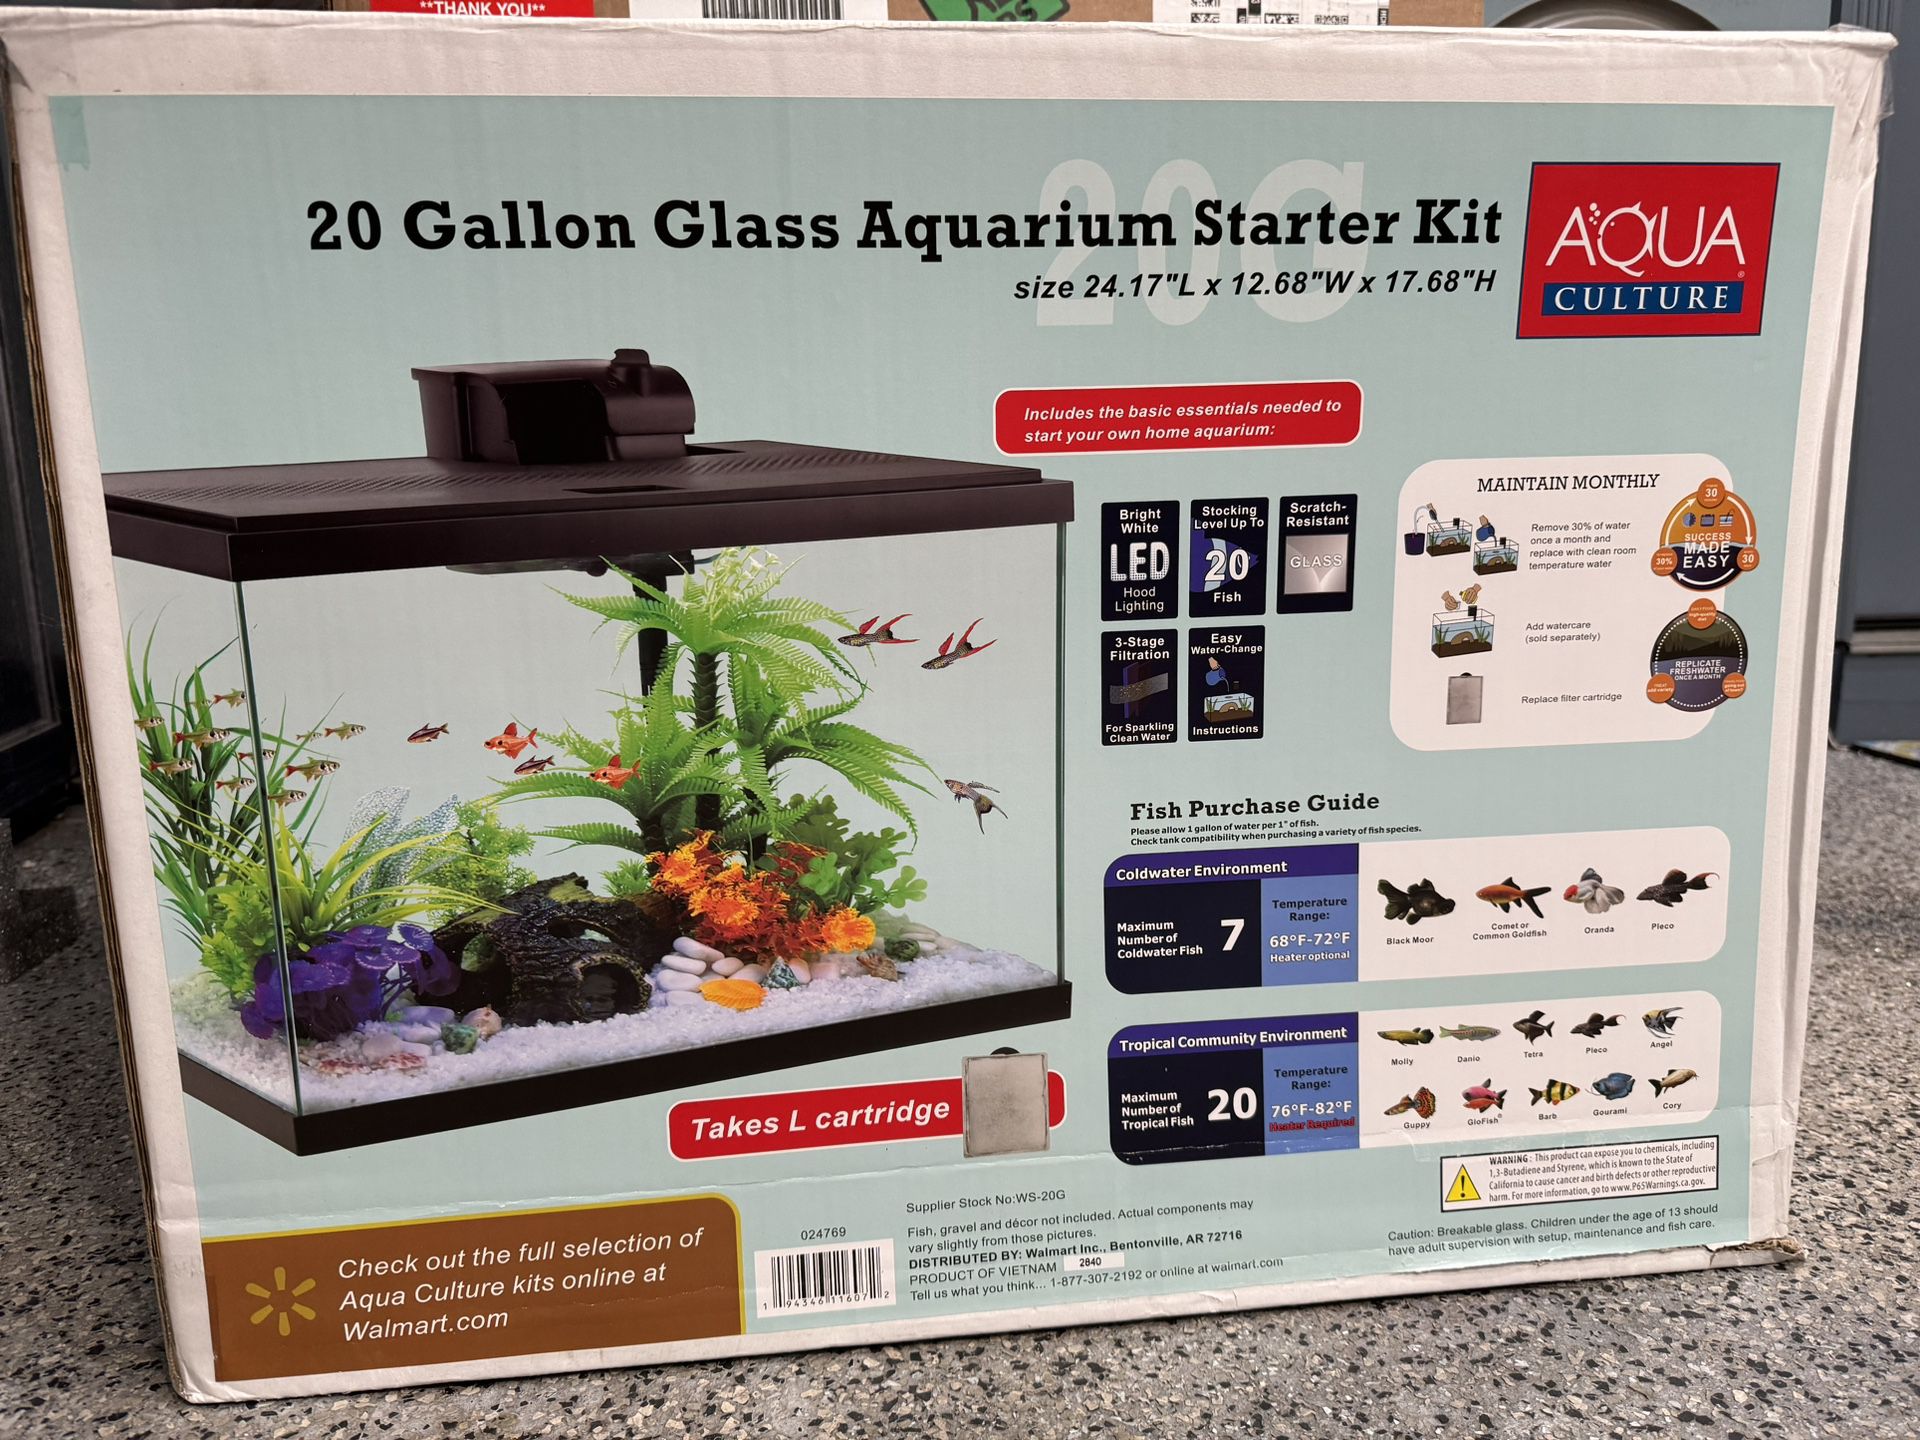 Aqua Culture 20 Gallon Glass Aquarium 